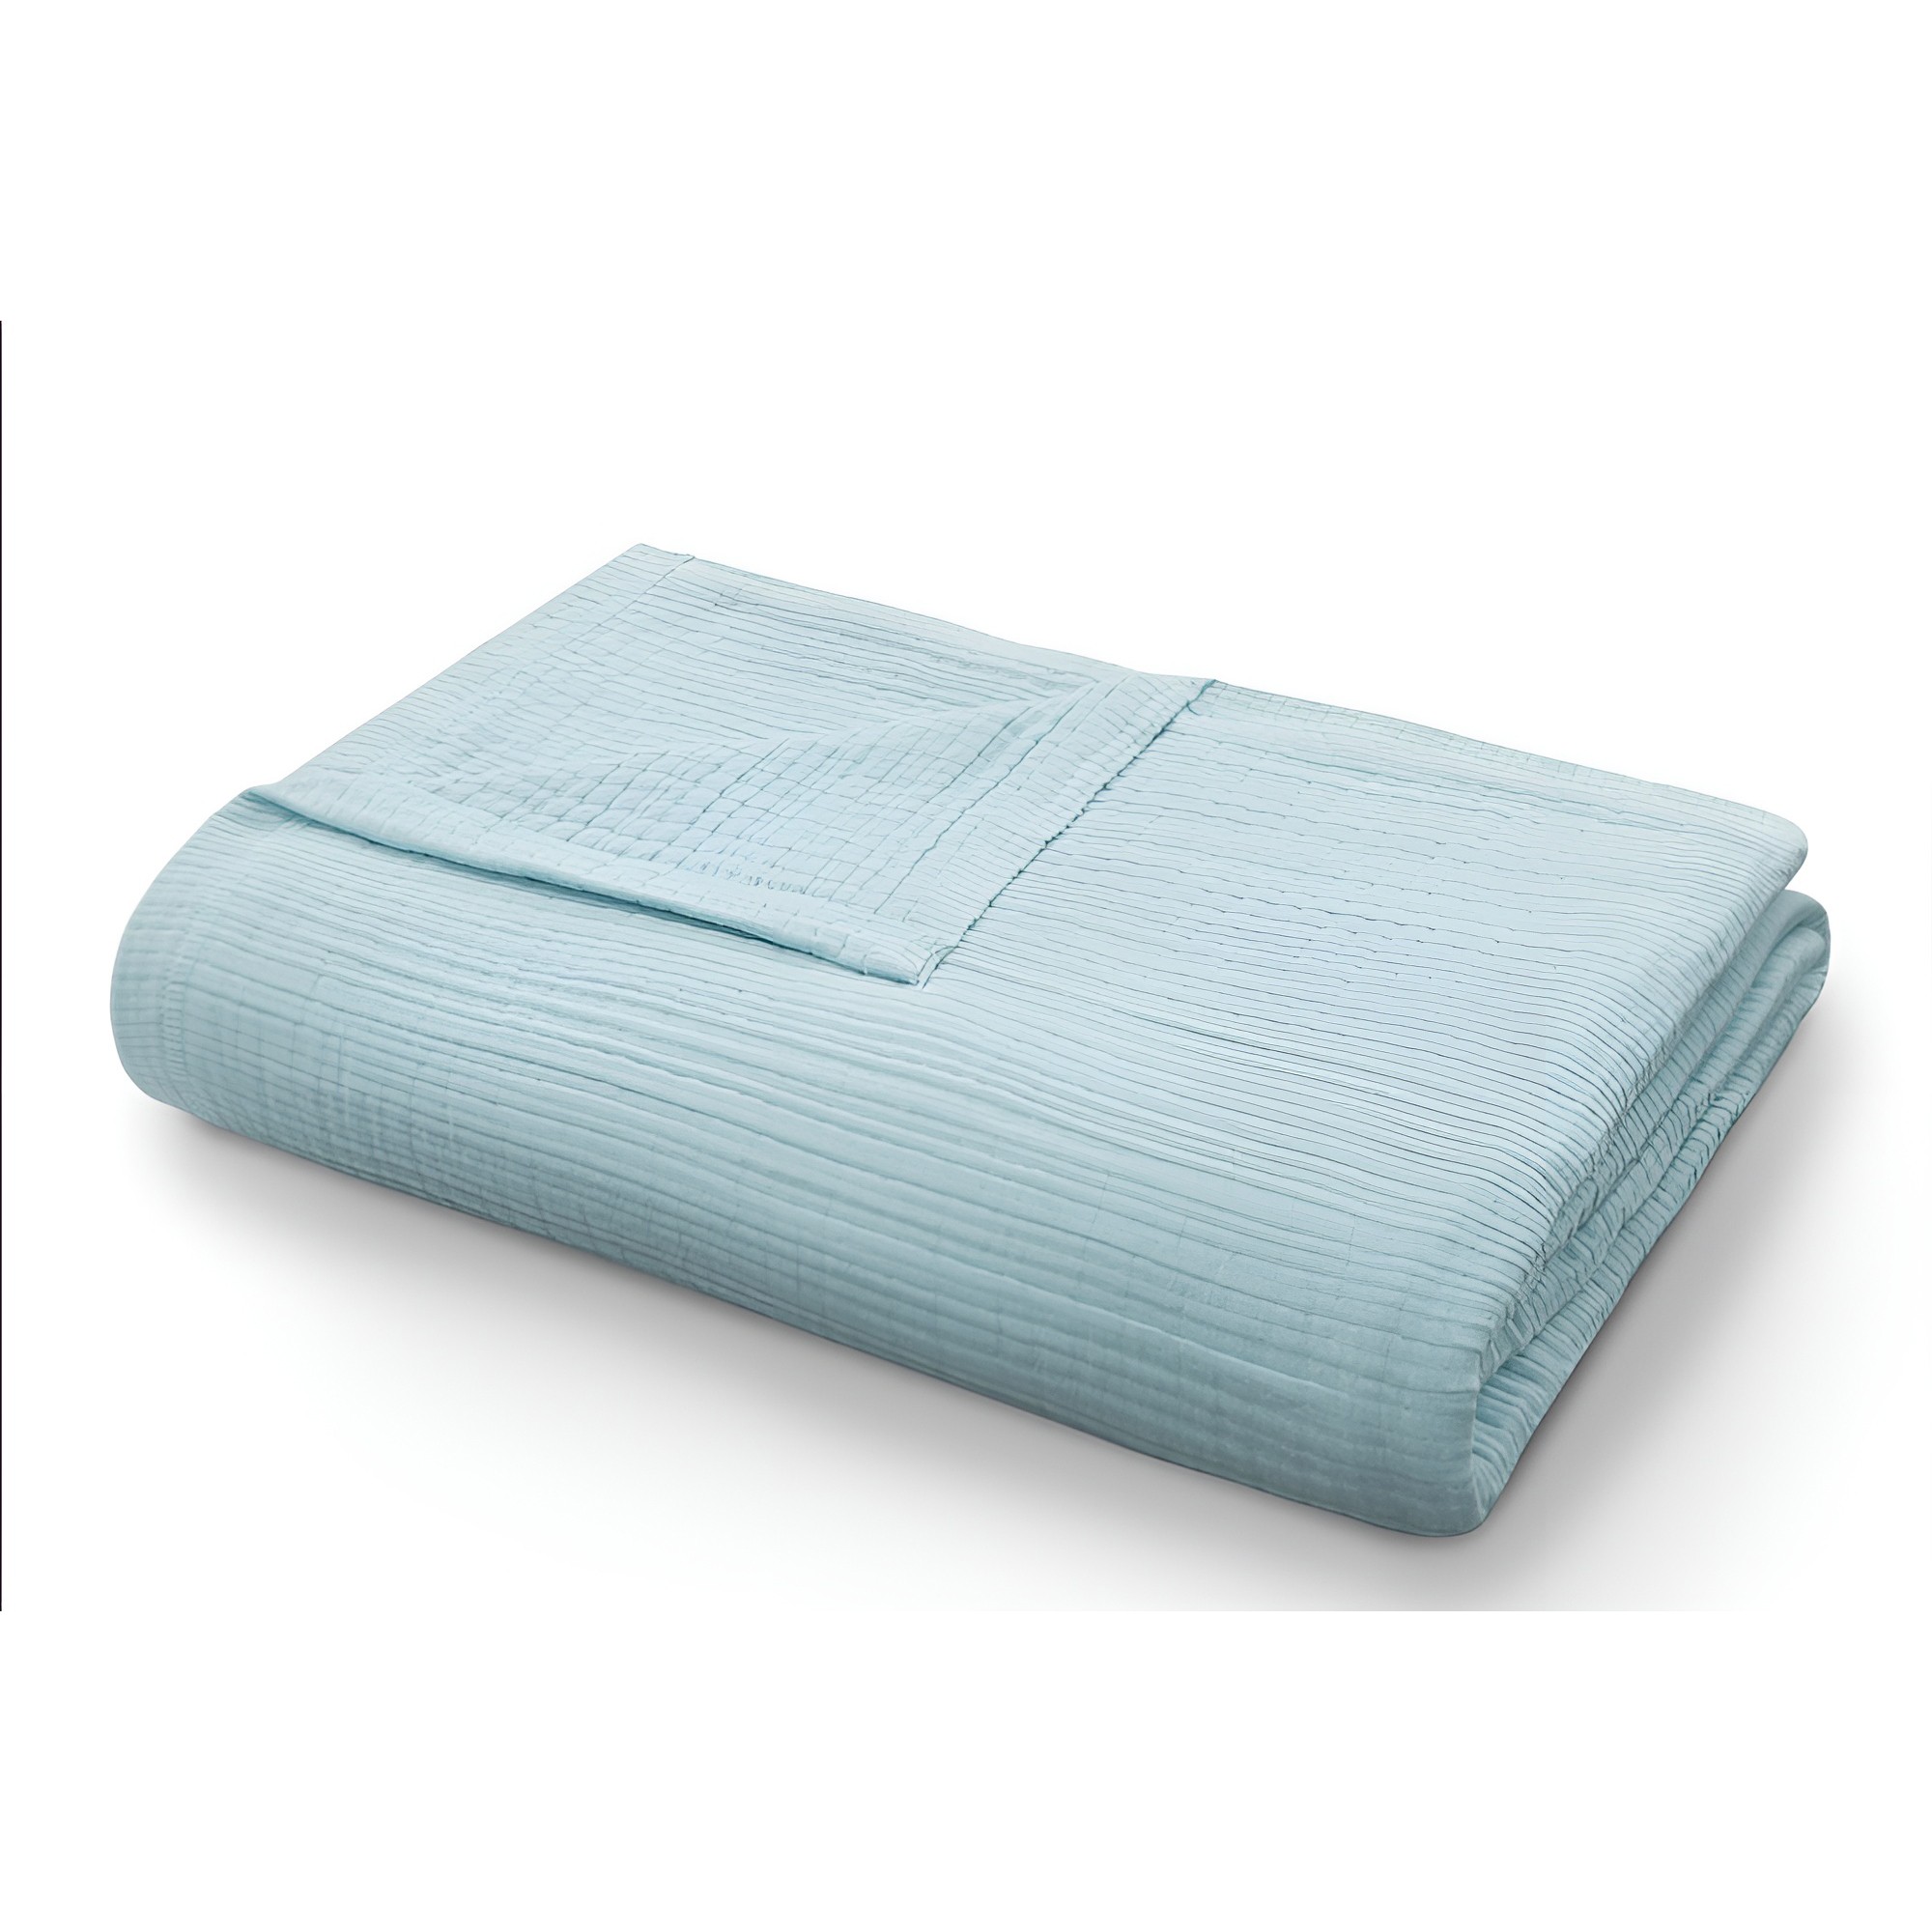 Одеяло-покрывало Кайли цвет: мятный (200х230 см), размер 200х230 см valt914928 Одеяло-покрывало Кайли цвет: мятный (200х230 см) - фото 1